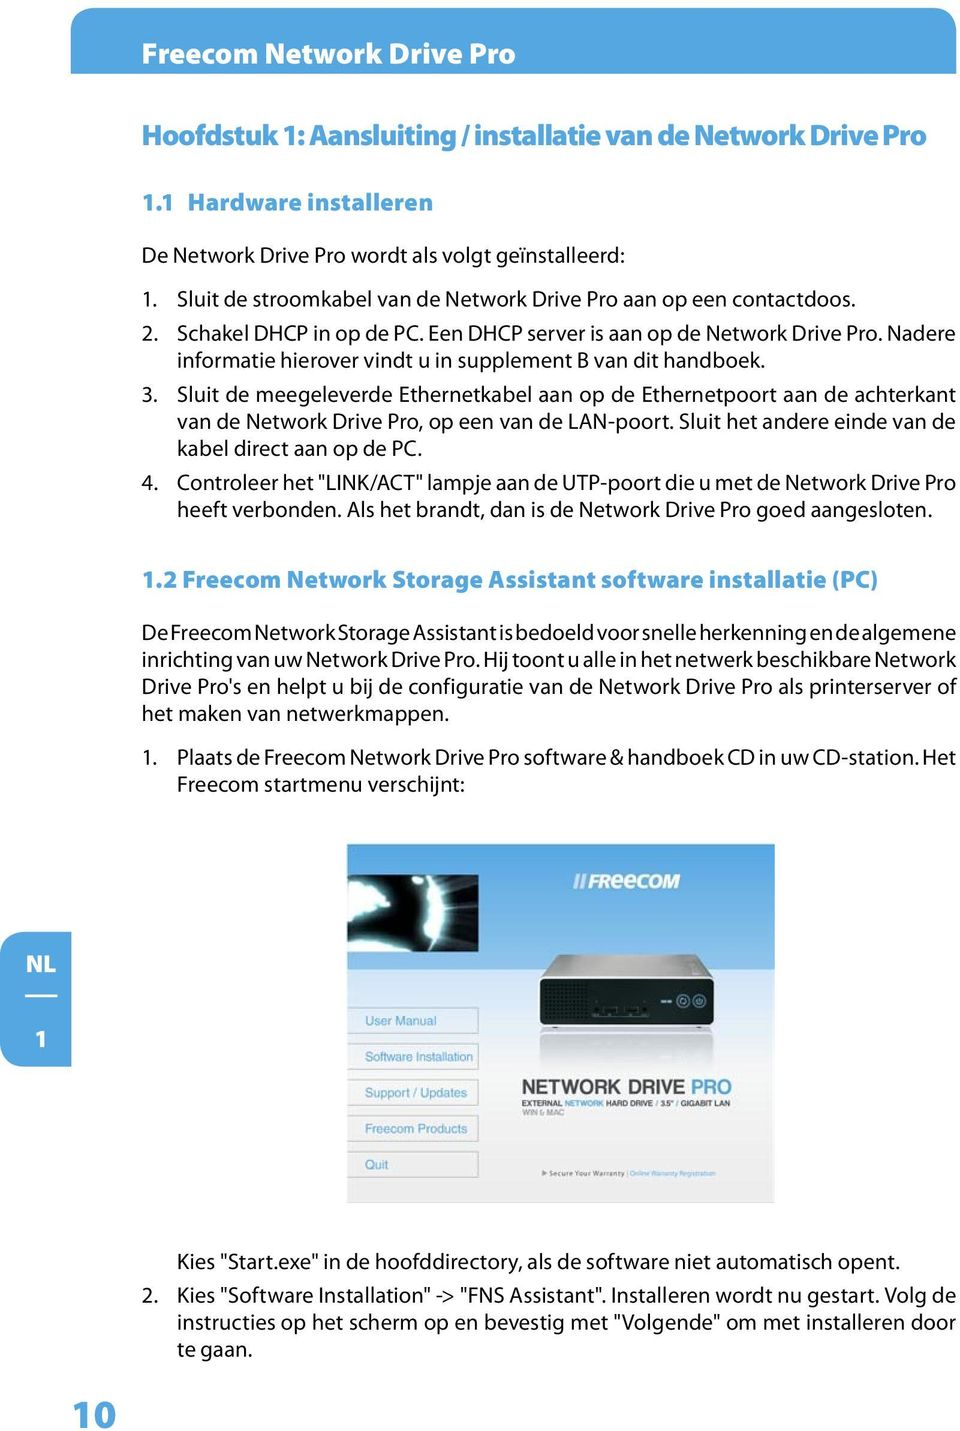 Nadere informatie hierover vindt u in supplement B van dit handboek. 3. Sluit de meegeleverde Ethernetkabel aan op de Ethernetpoort aan de achterkant van de Network Drive Pro, op een van de LAN-poort.